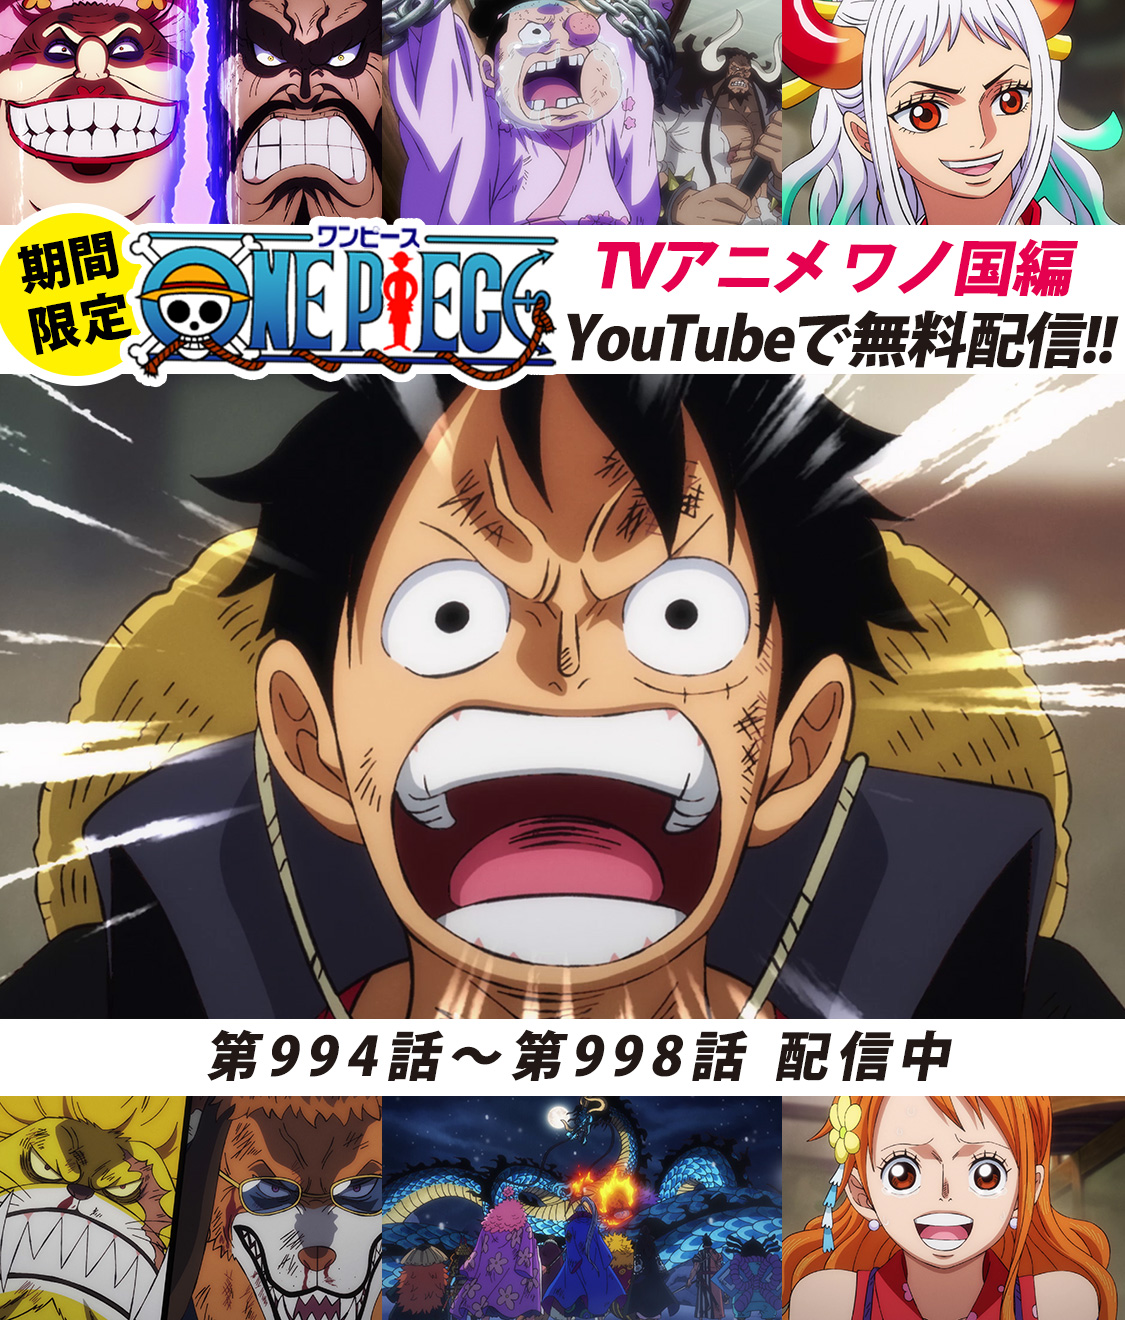 Twitter 上的 One Piece スタッフ 公式 Official Youtubeにてアニメ無料配信中 全面戦争 本格始動 994 998話を公開しました 来週21日 日 あさ9 30 いよいよ1000話が放送されます 超特報もあるので お楽しみに まずは 994話をみる T Co